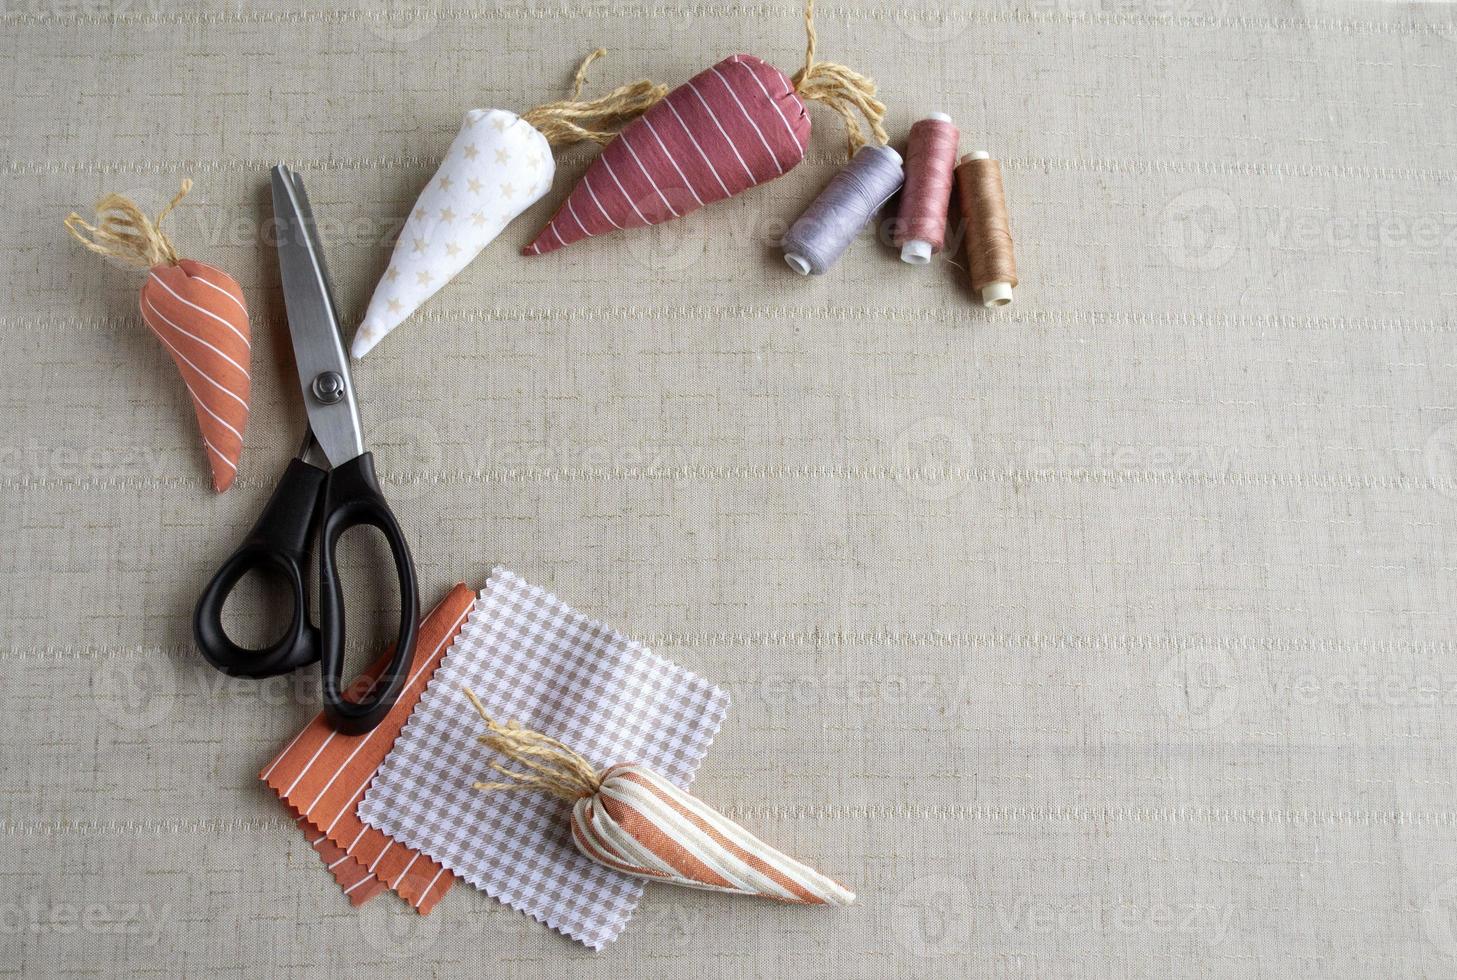 couture de pâques, outils de couture, fil, ciseaux, carottes en tissu, décor pour décorer la maison pour pâques. espace pour le texte. photo